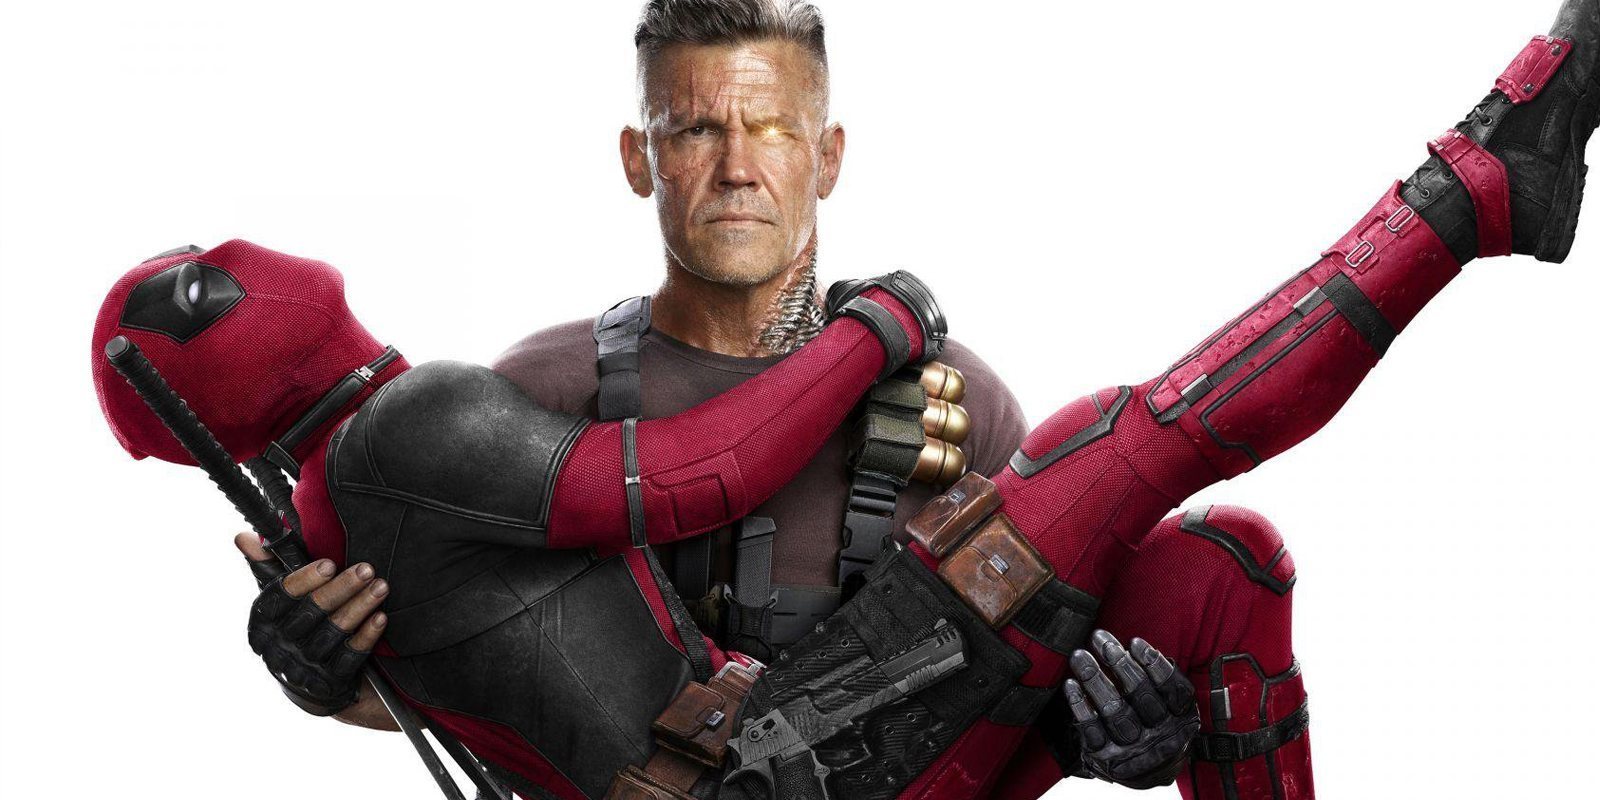 Las primeras impresiones de 'Deadpool 2' dicen que es la secuela perfecta